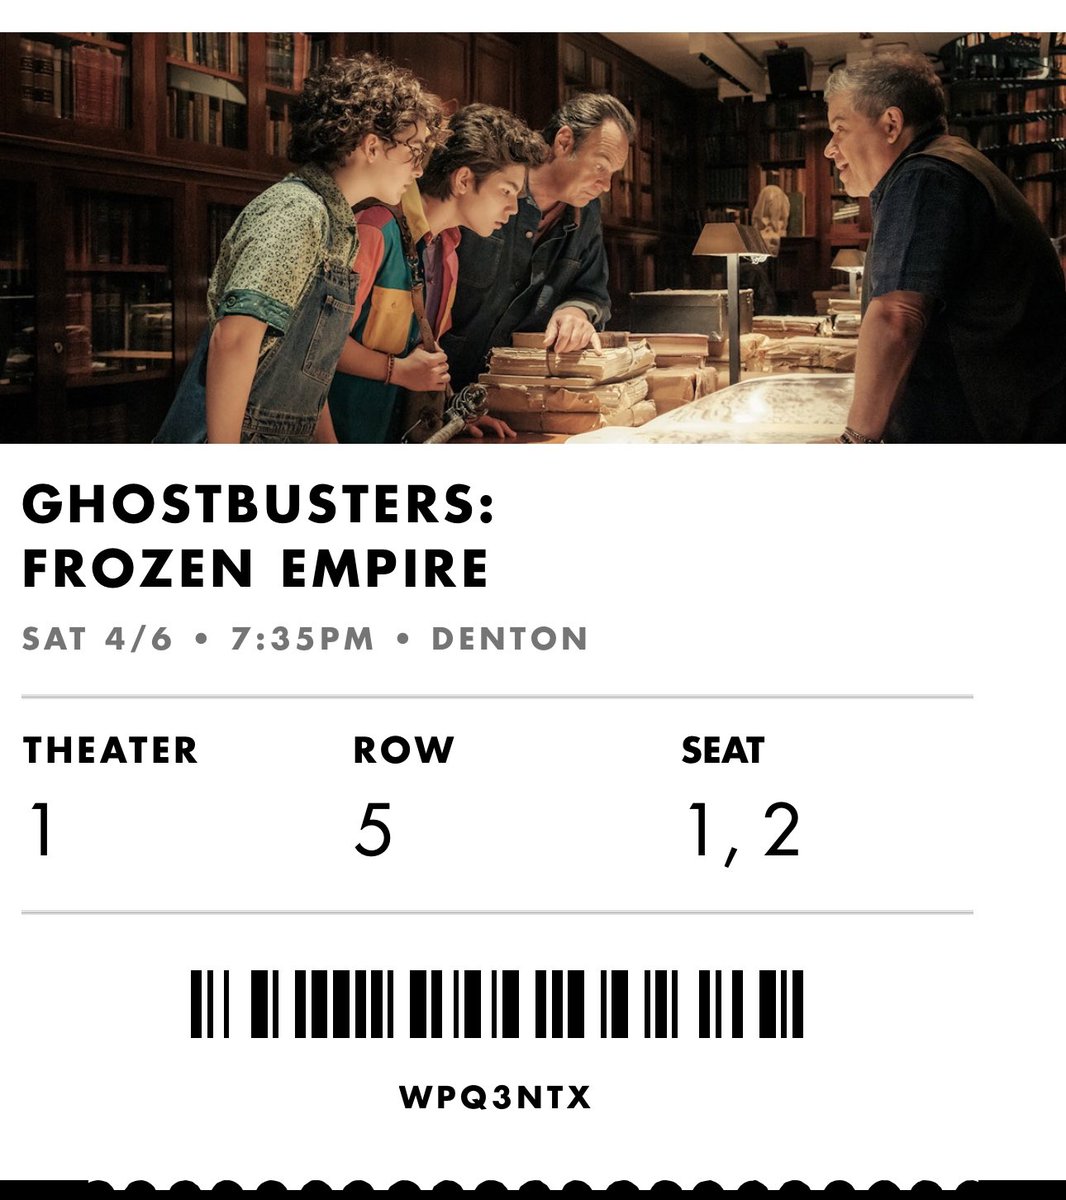 Ghostbuster: Frozen Empire @alamodrafthouse #Denton